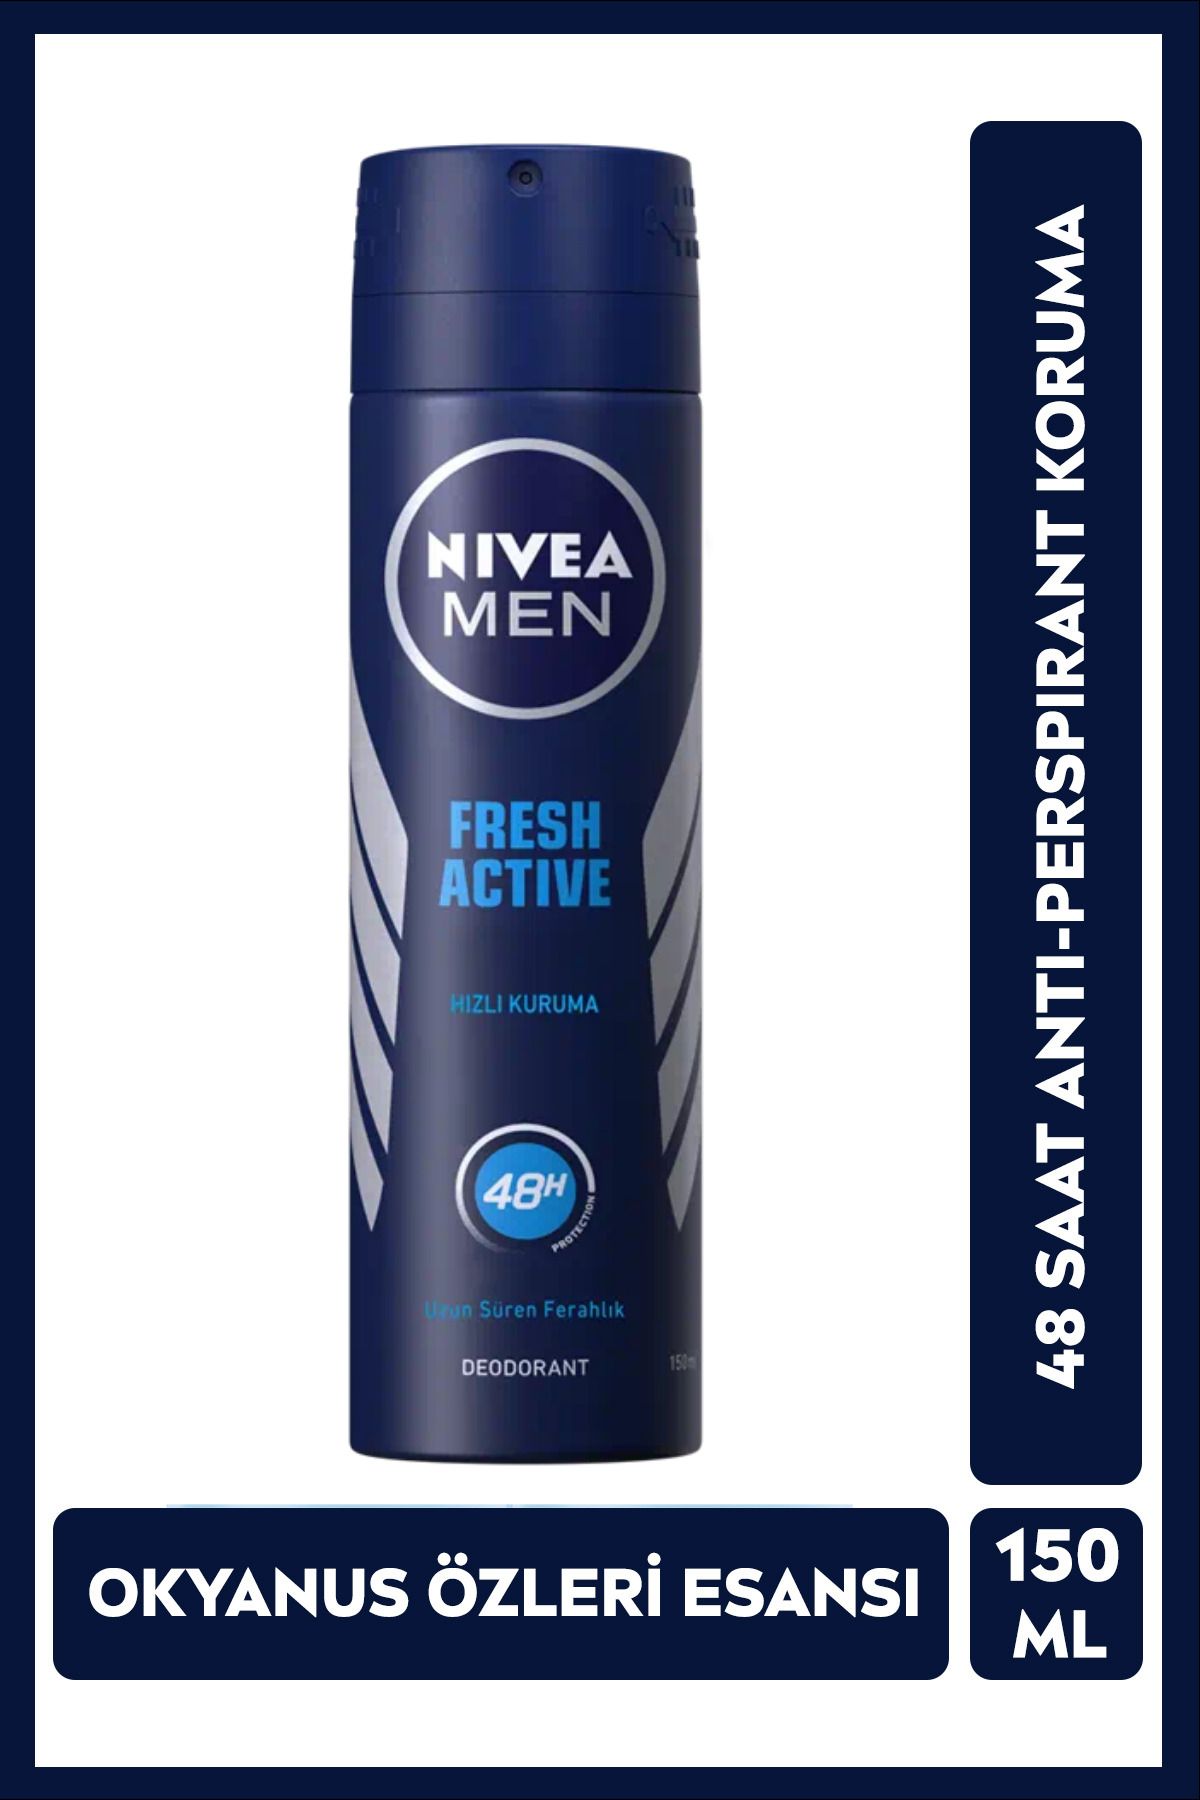 NIVEA MEN Erkek Sprey Deodorant Fresh Active 150ml, Ter Kokusuna 48 Saat Etkili, Erkeksi Koku, Ferahlık